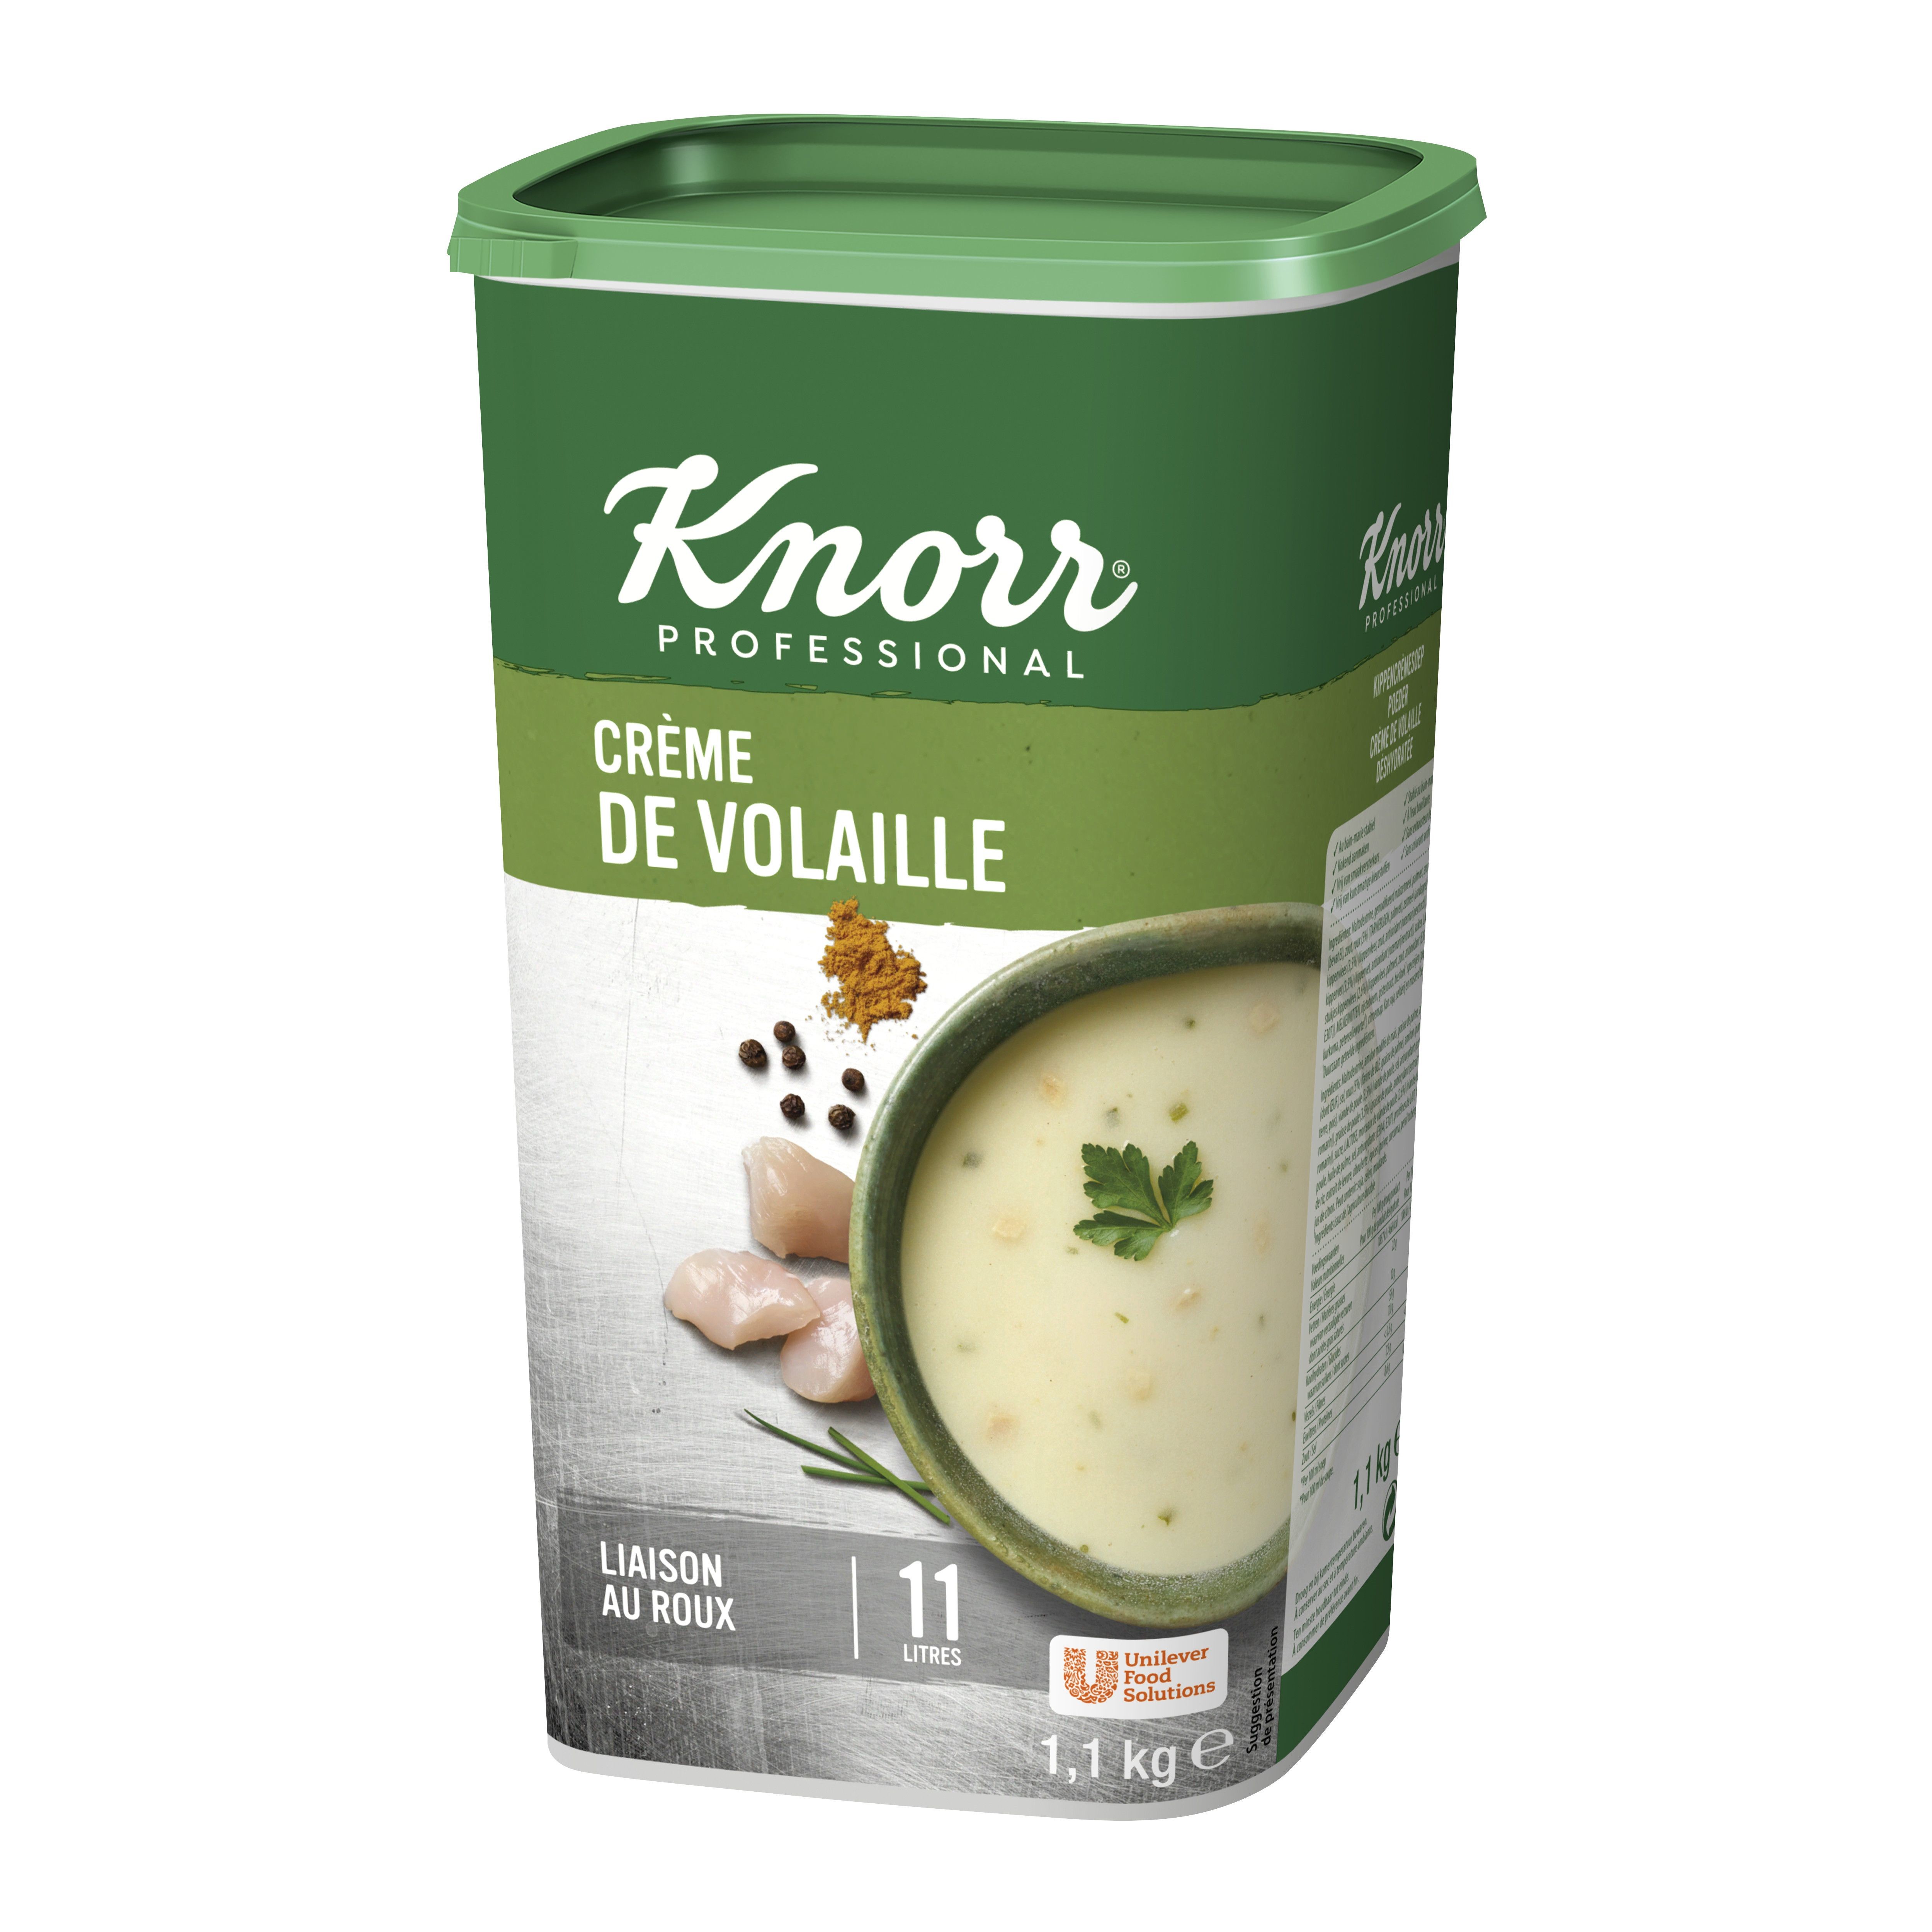 Knorr soupe creme de volaille 1.1kg Professional